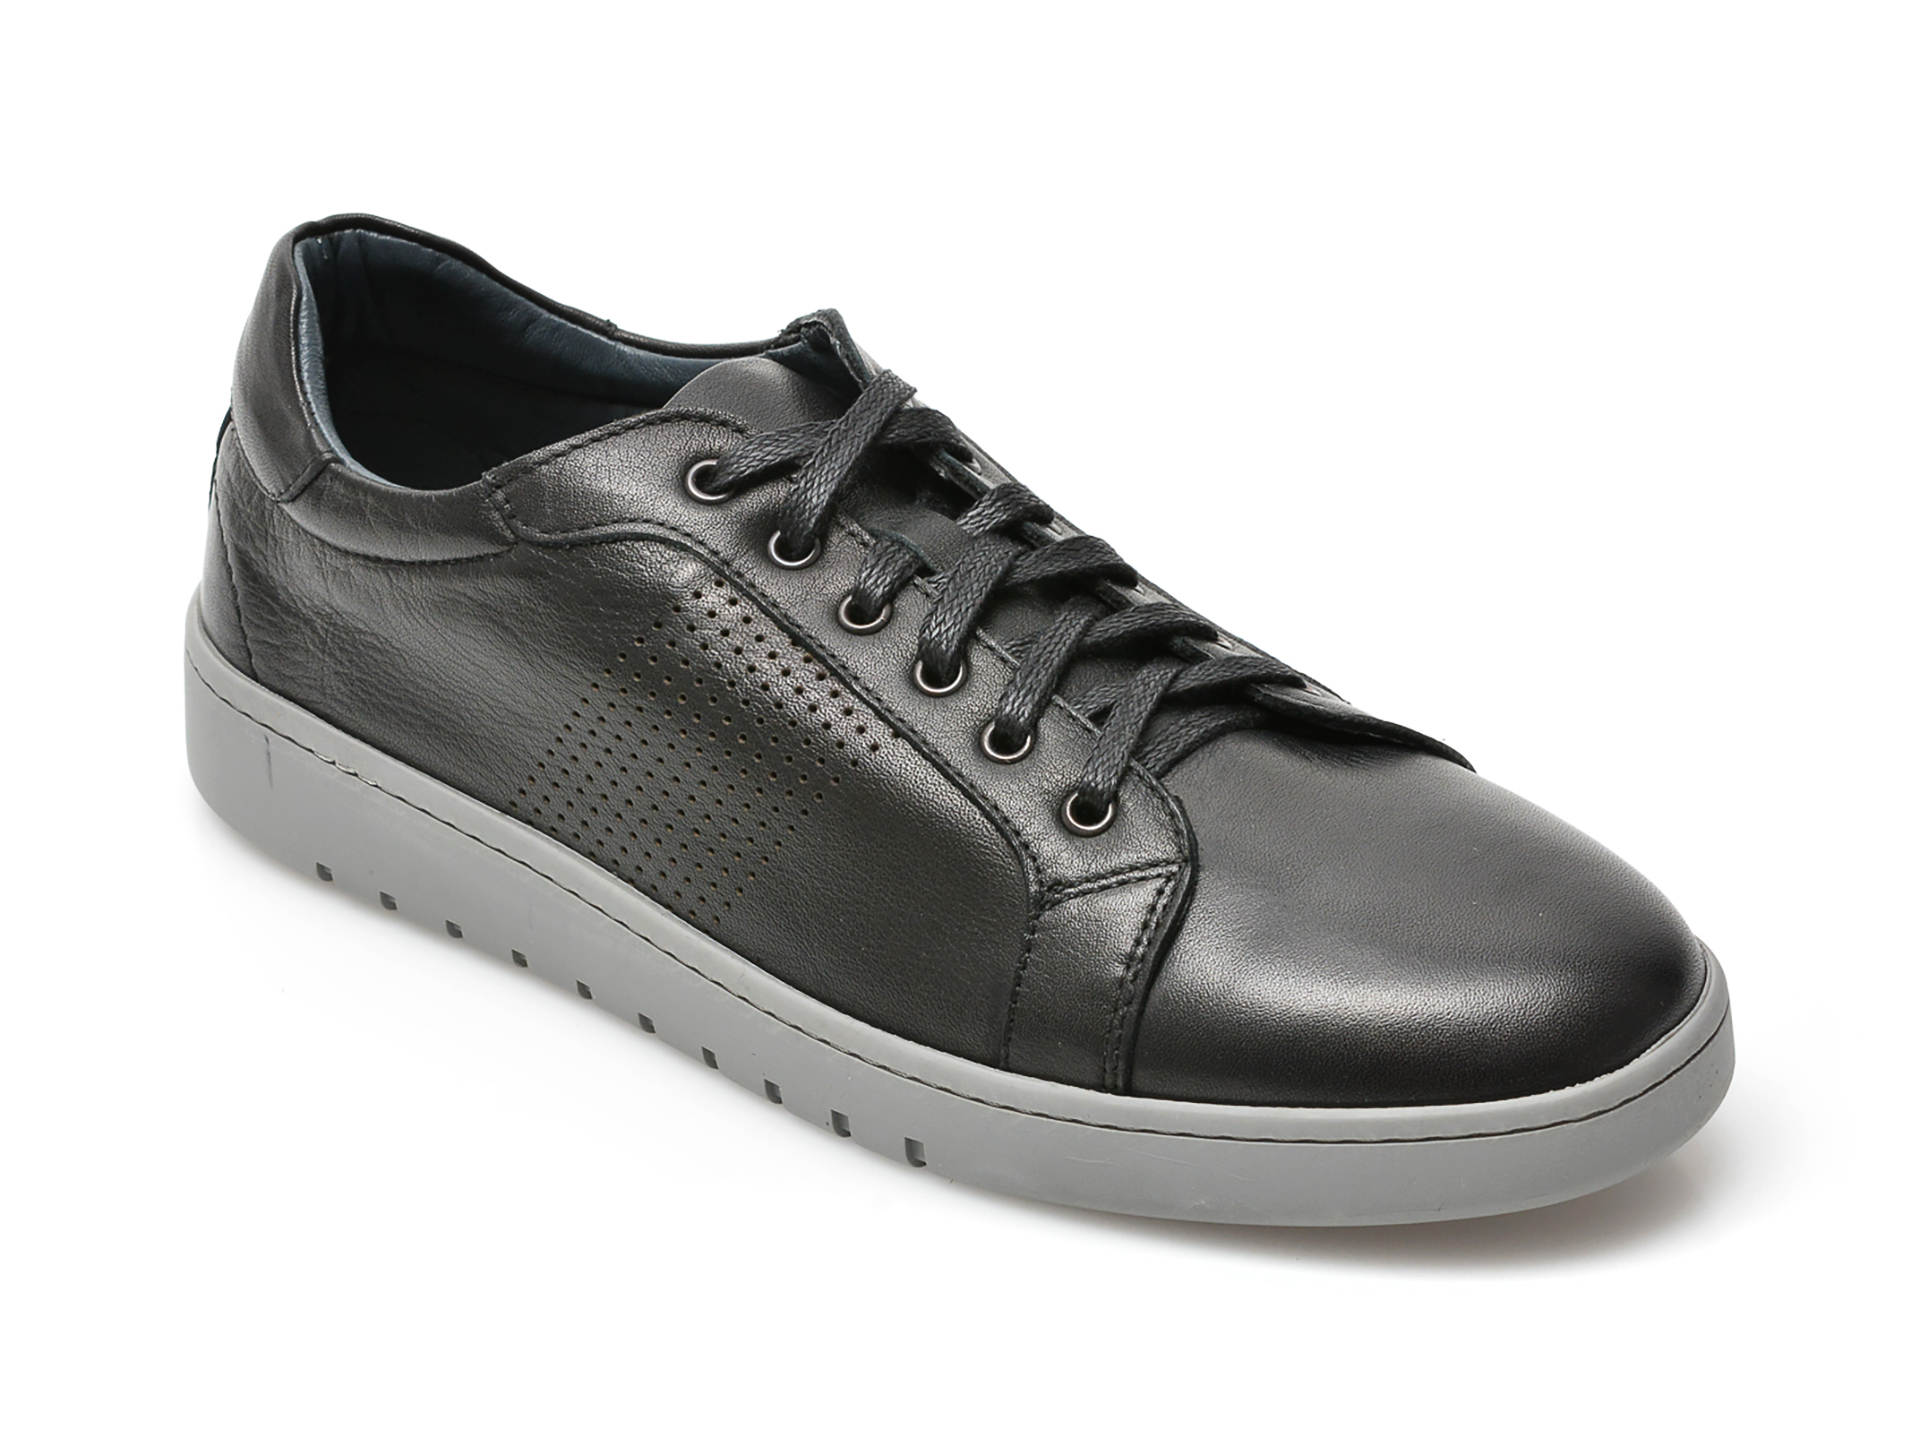 Pantofi OTTER negri, 33621, din piele naturala 2023 ❤️ Pret Super Black Friday otter.ro imagine noua 2022